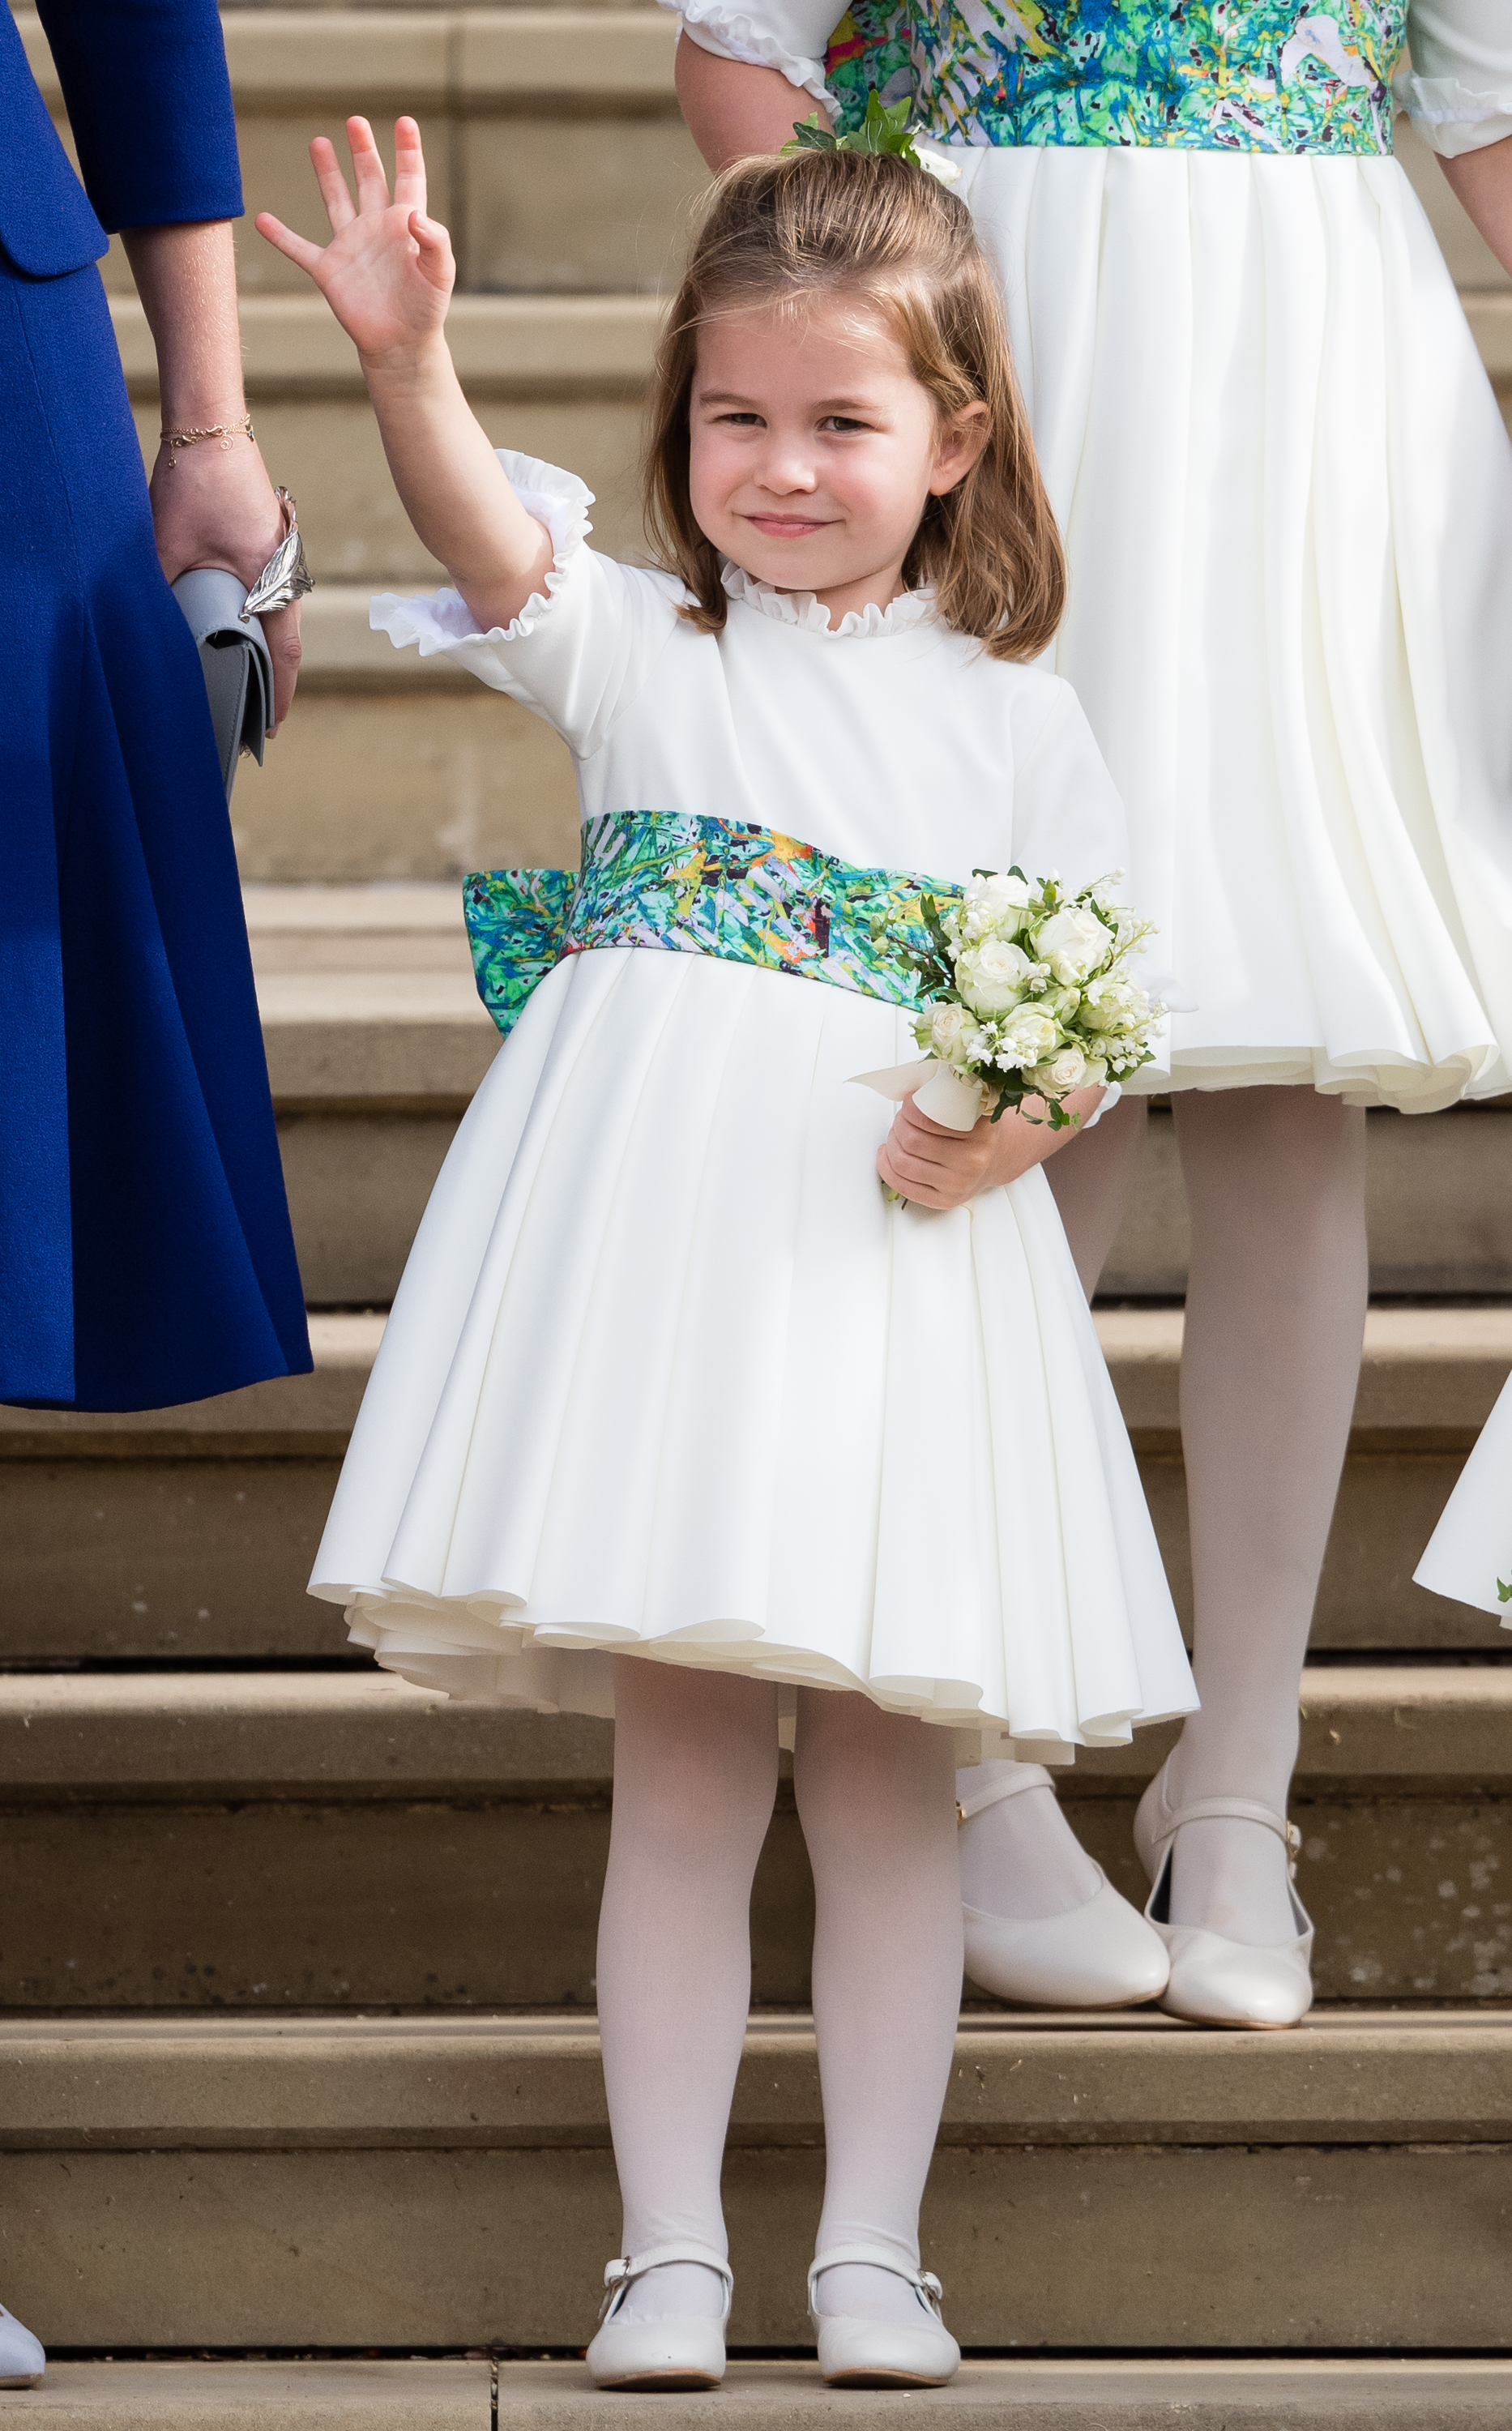 La princesa Charlotte en la boda de la princesa Eugenie y Jack Brooksbank el 12 de octubre de 2018, en Windsor, Inglaterra. | Foto: Getty Images